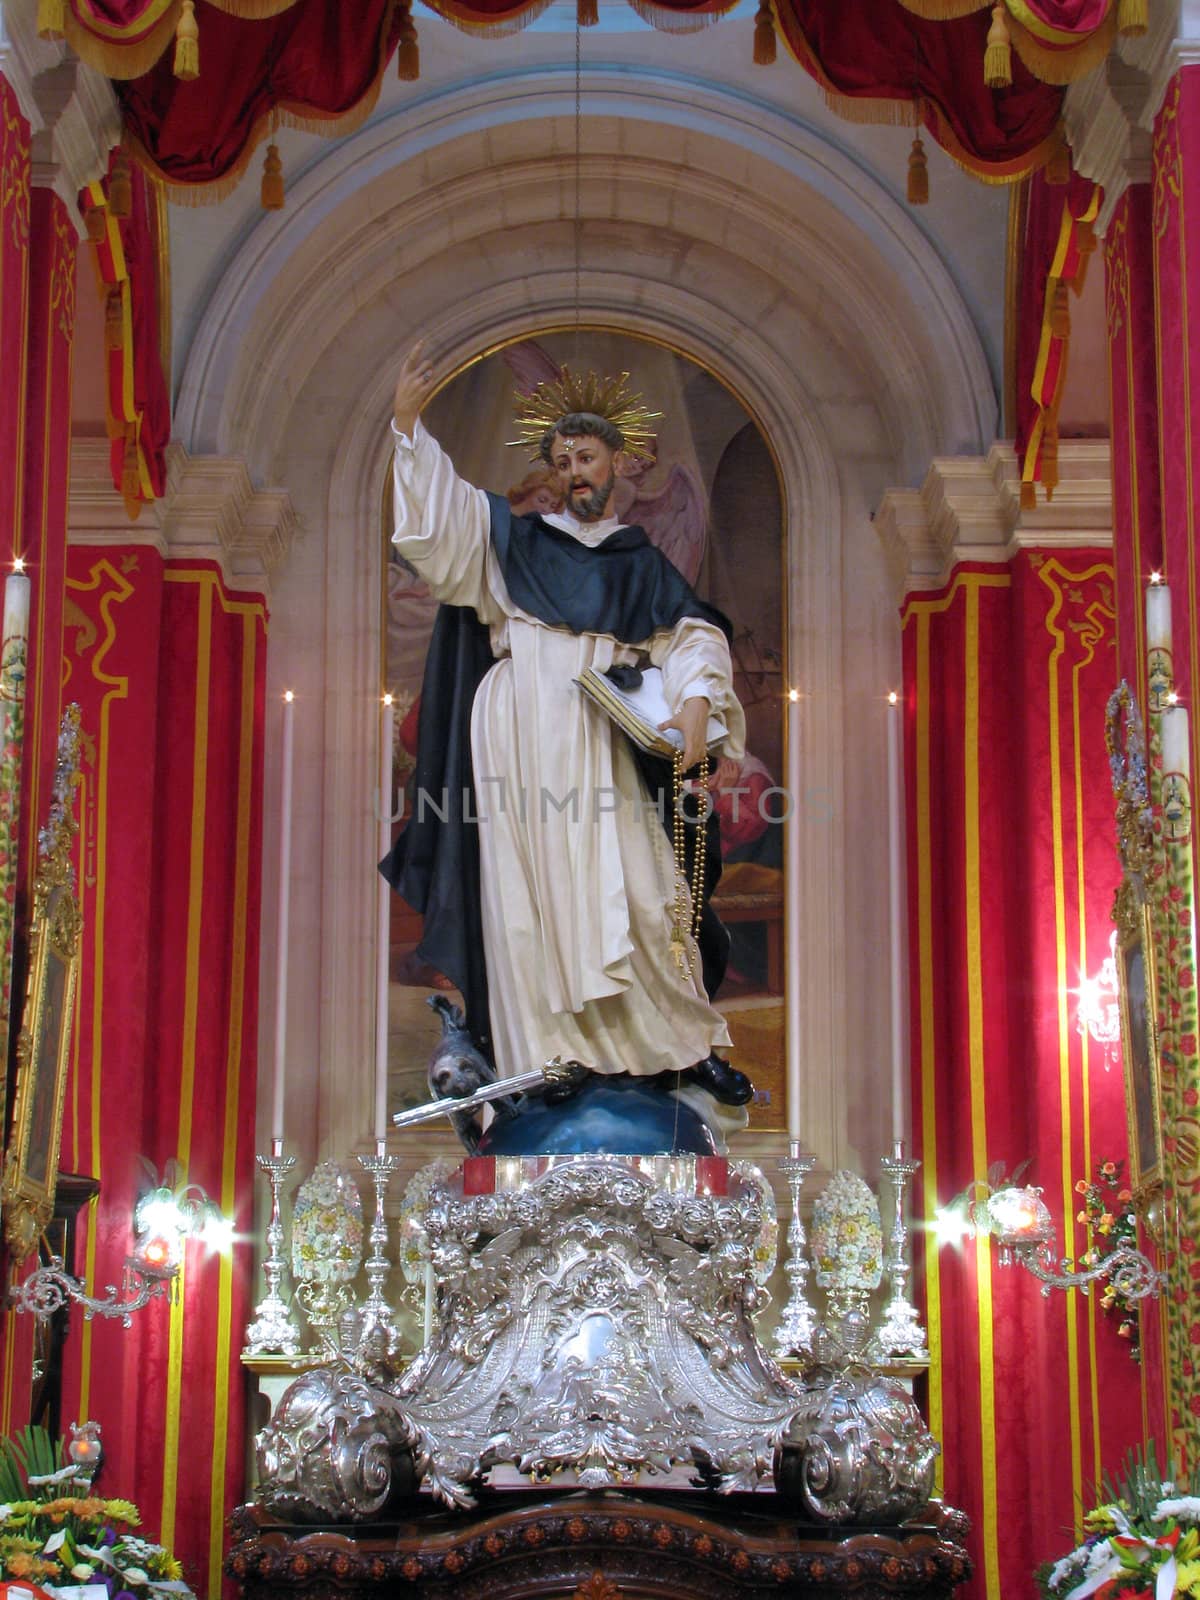 Saint Dominic de Guzman by fajjenzu